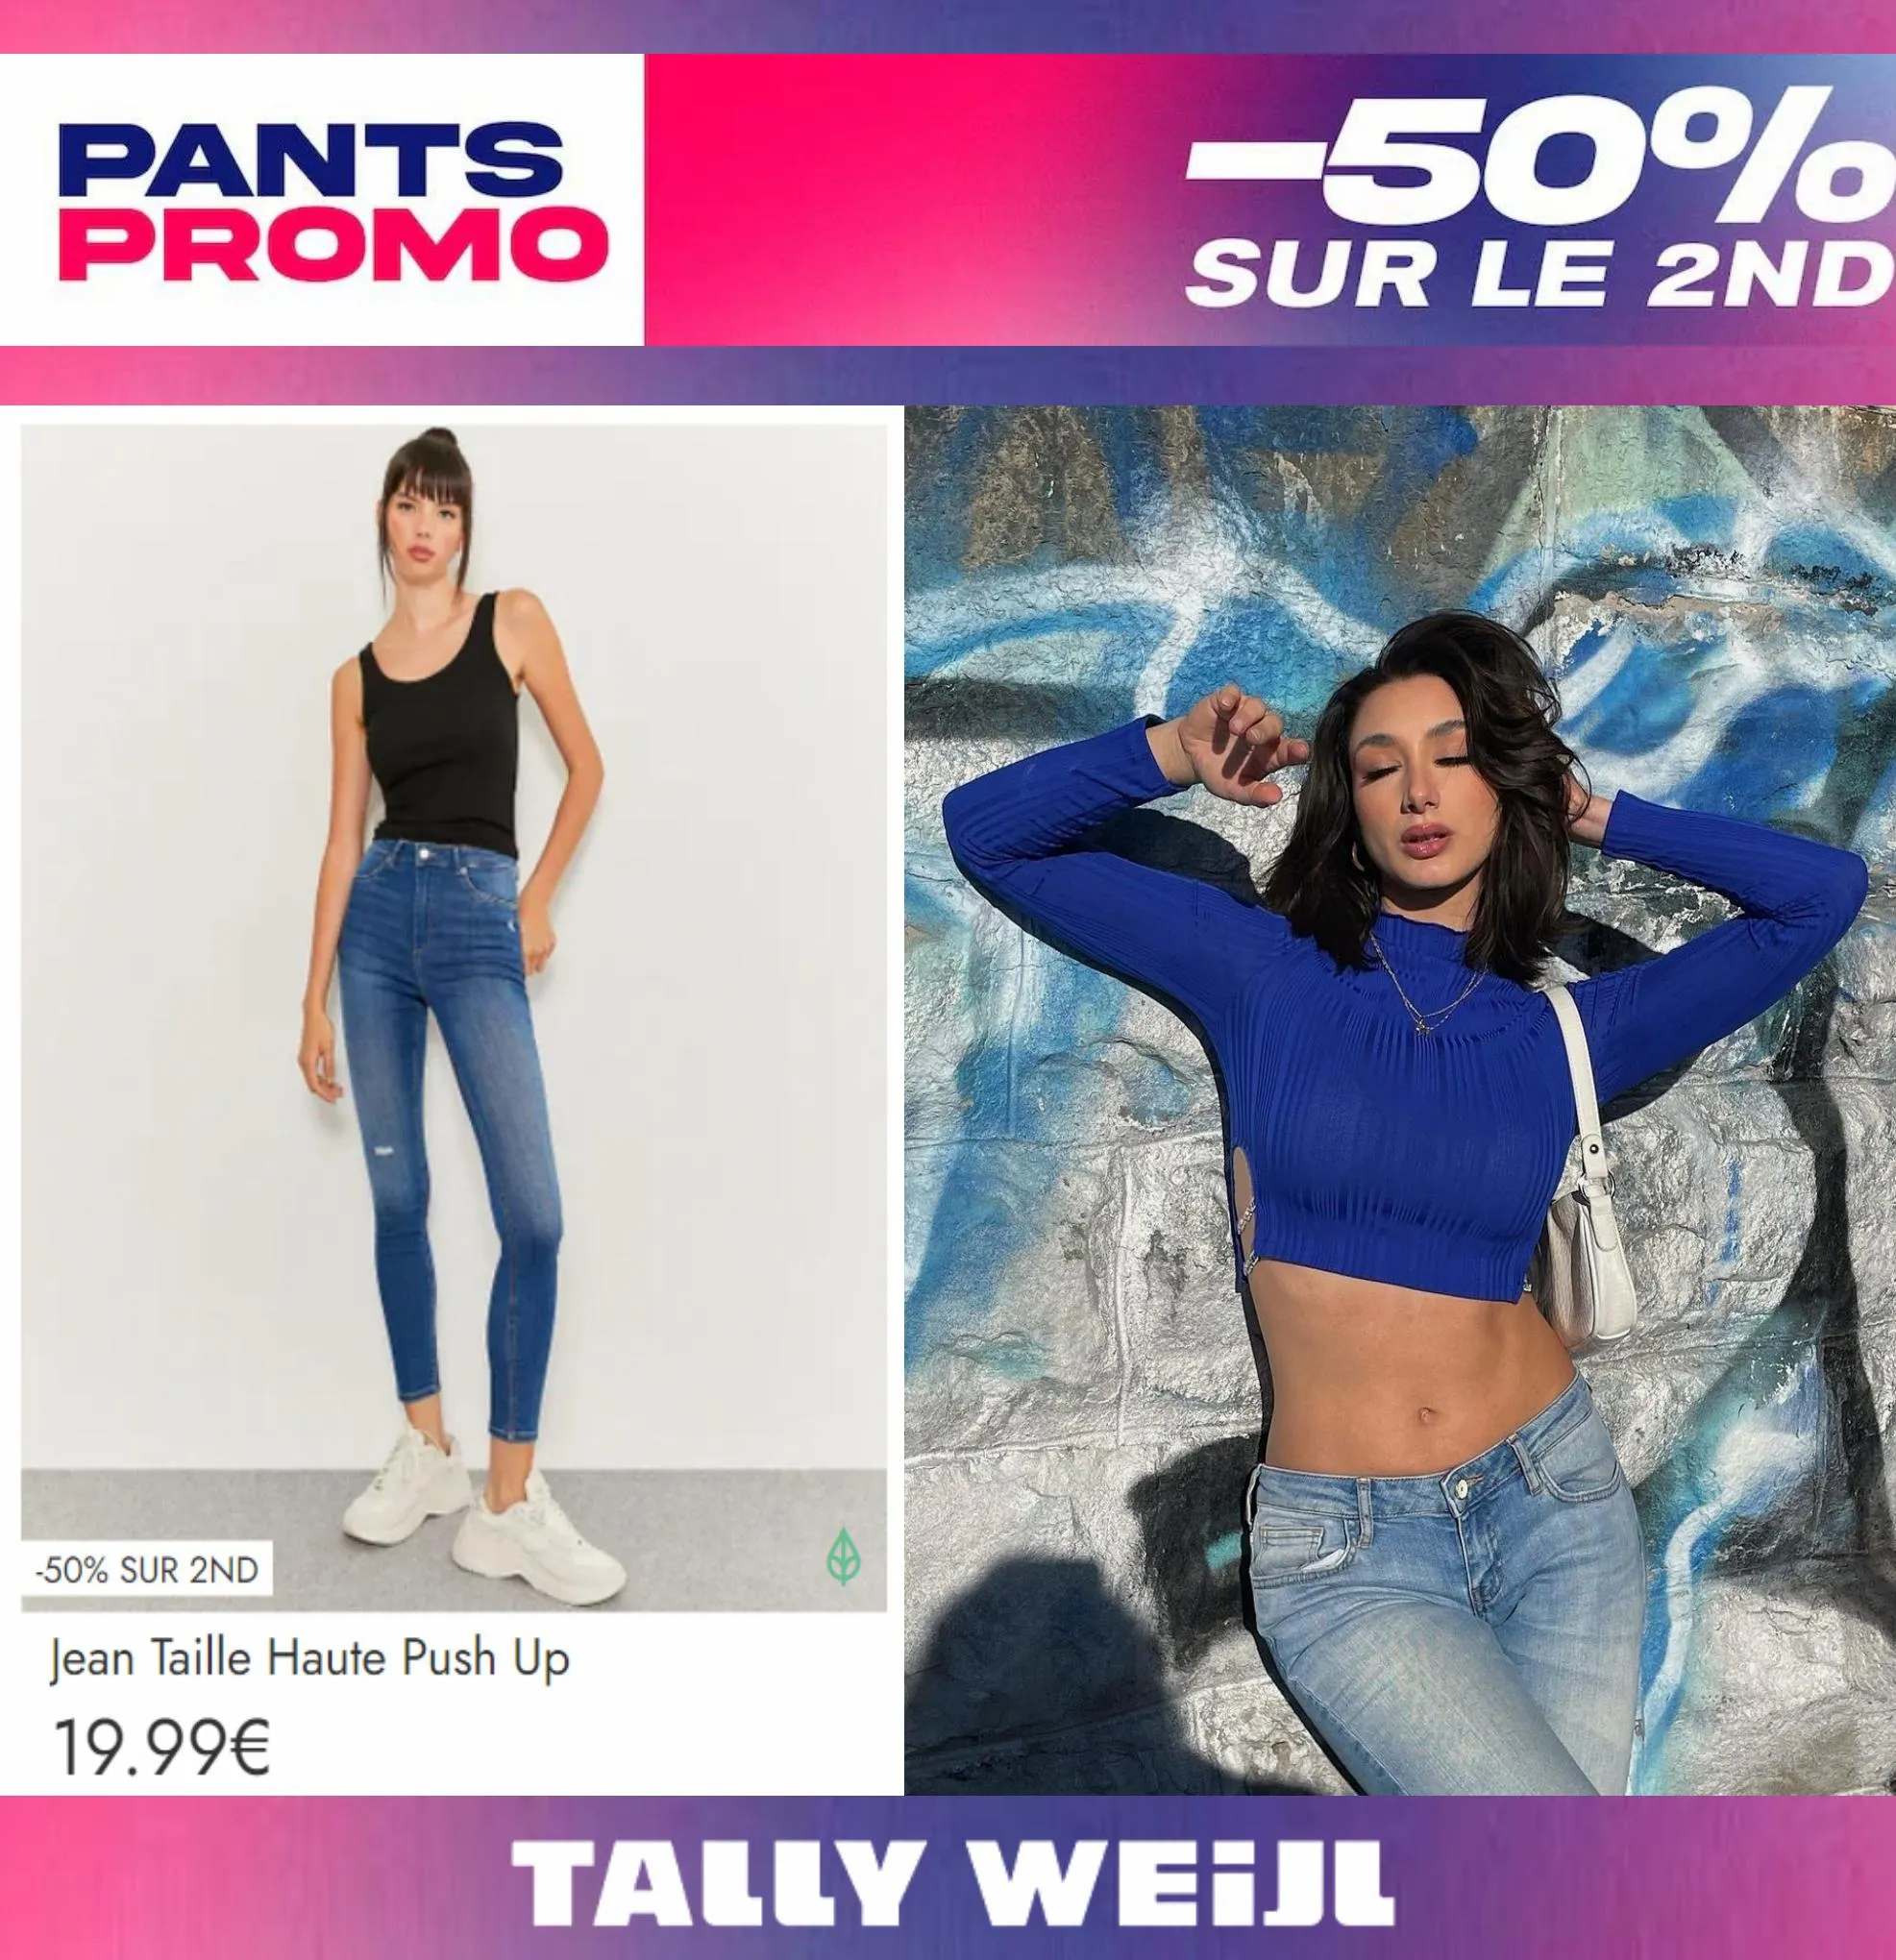 Catalogue Pants Promo -50% sur le 2nd*, page 00001